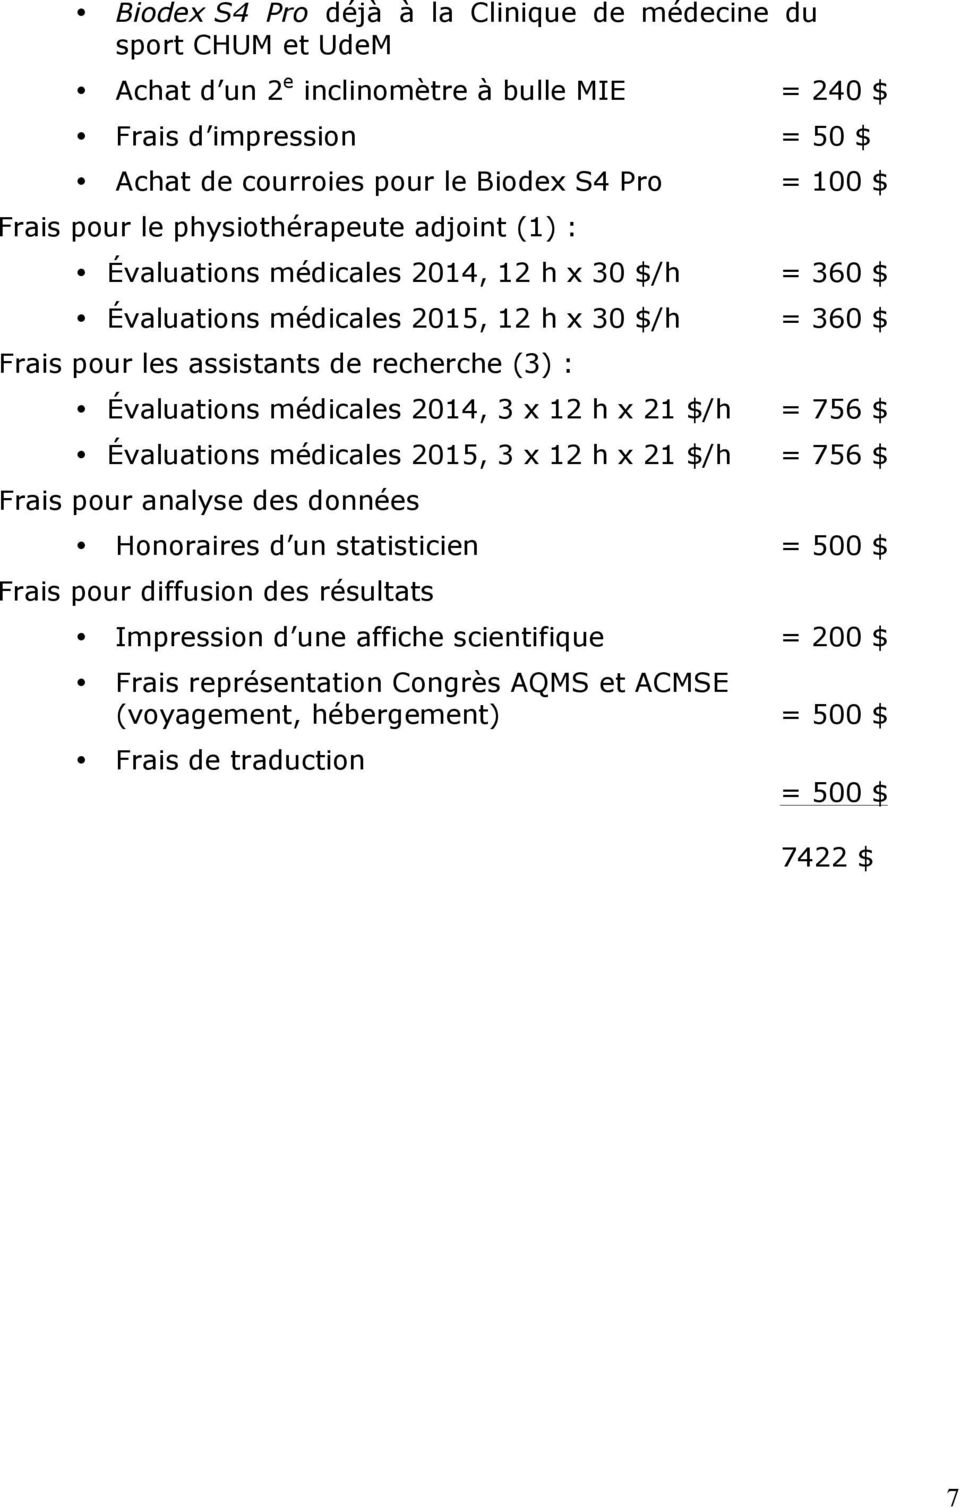 (3) : Évaluations médicales 2014, 3 x 12 h x 21 $/h = 756 $ Évaluations médicales 2015, 3 x 12 h x 21 $/h = 756 $ Frais pour analyse des données Honoraires d un statisticien = 500 $ Frais